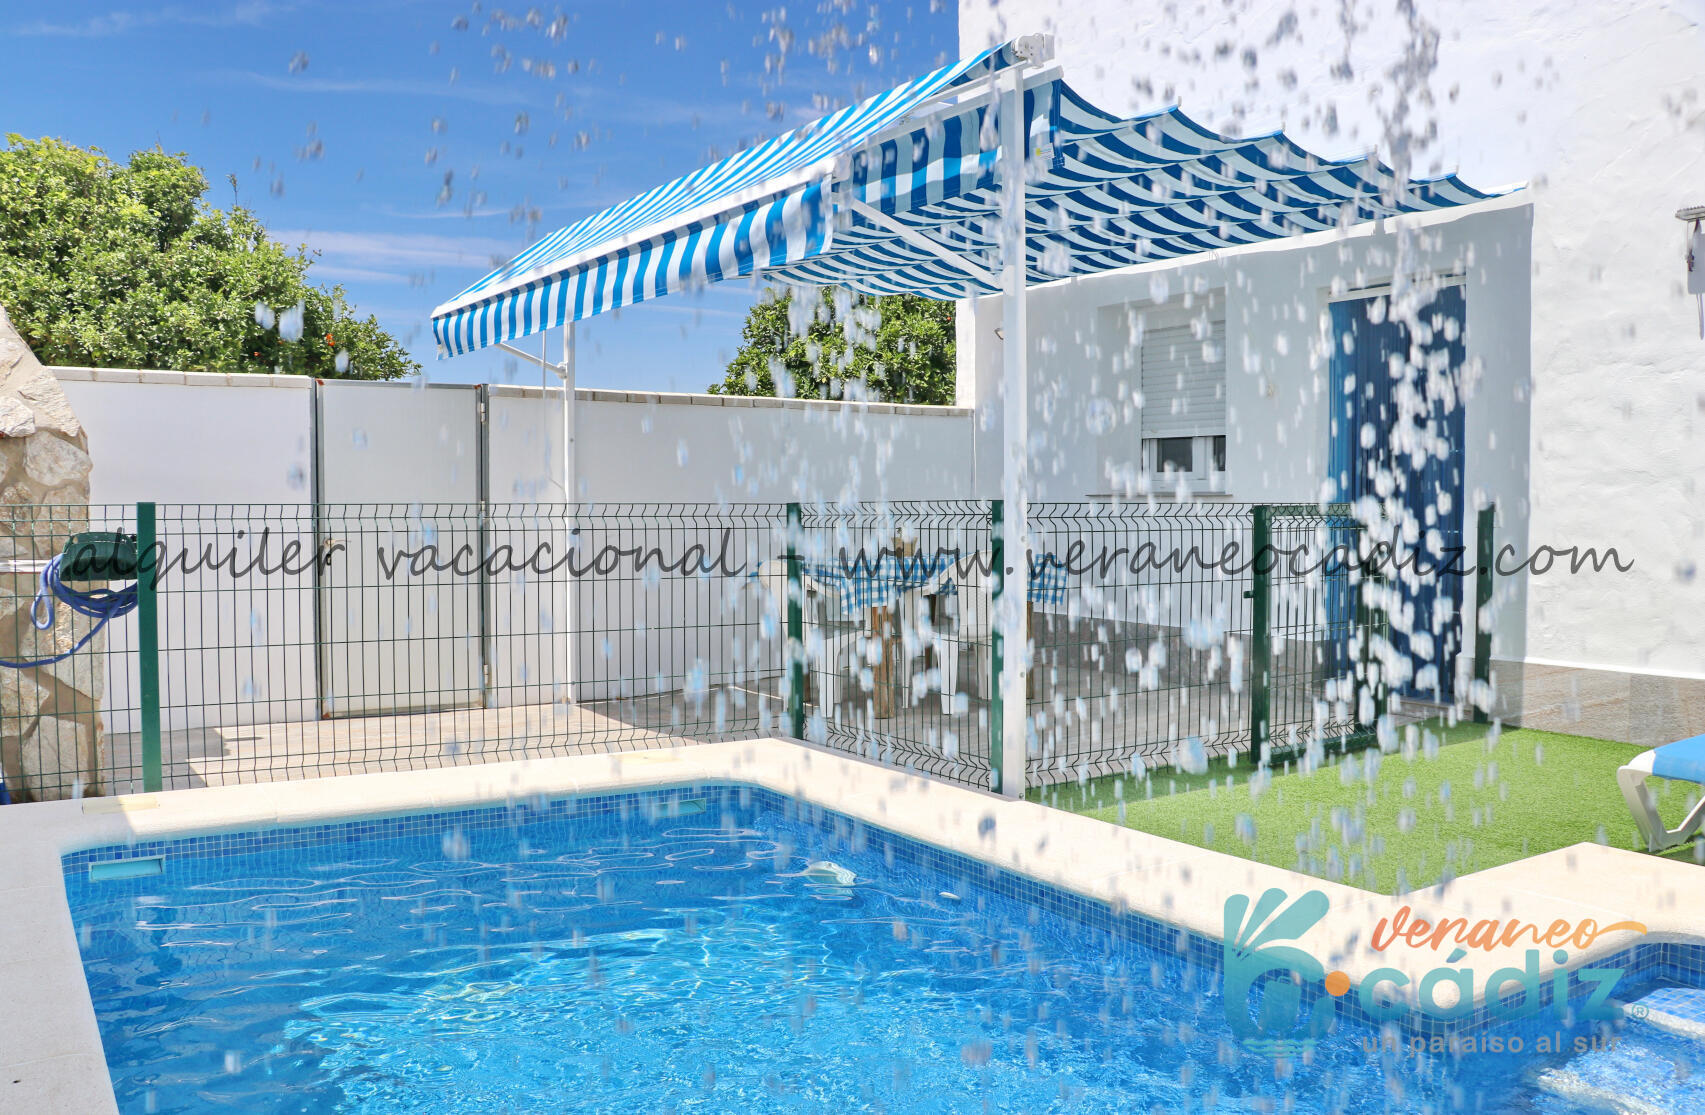 Casa alquiler acogedora con piscina | Conil 400